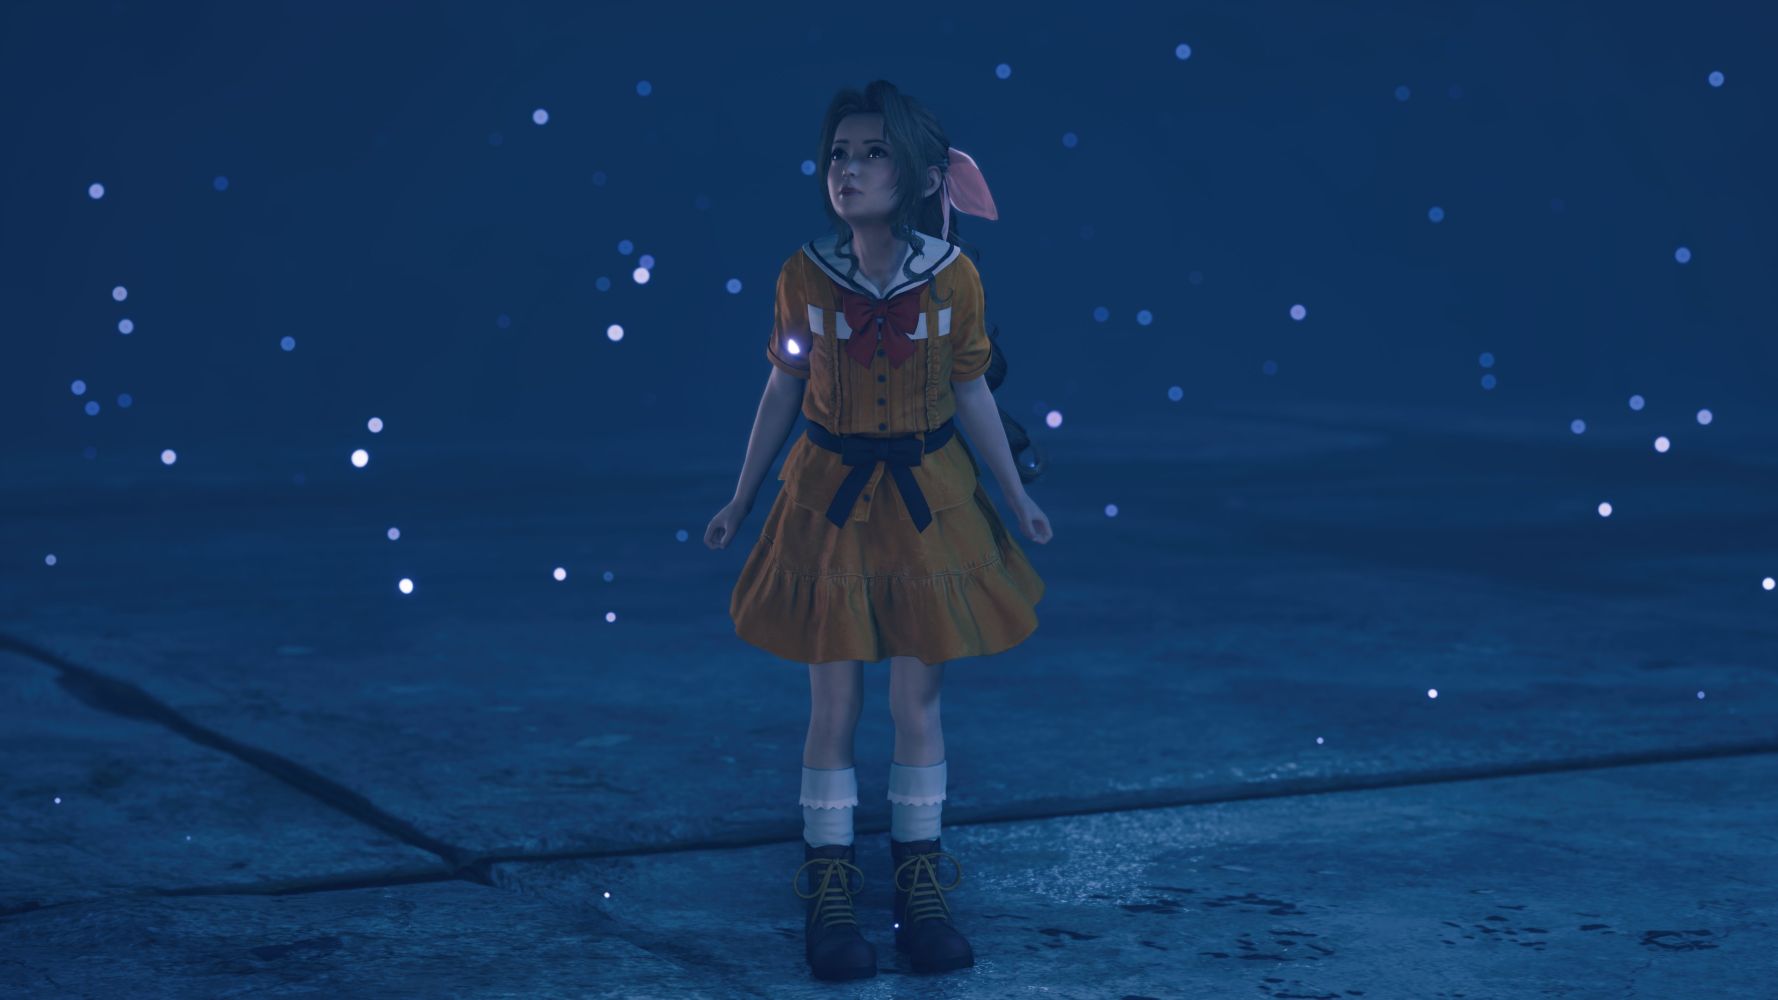 #Final Fantasy VII Remake: Die junge Aerith zwischen Freude und Einsamkeit